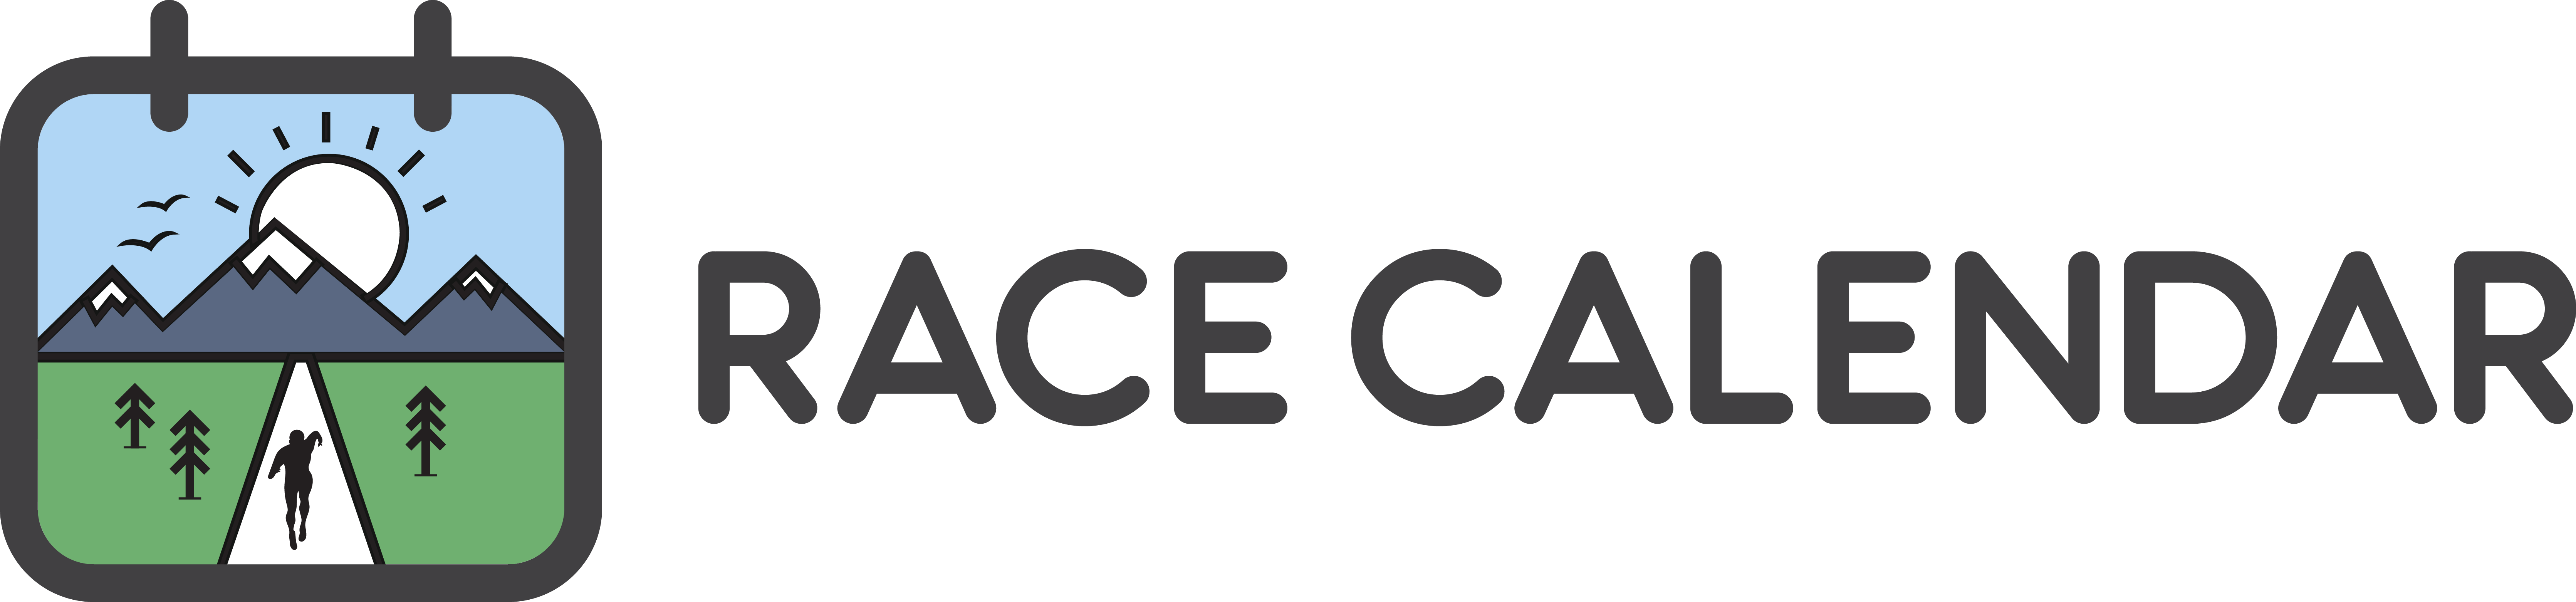 racecalendar.bg logo